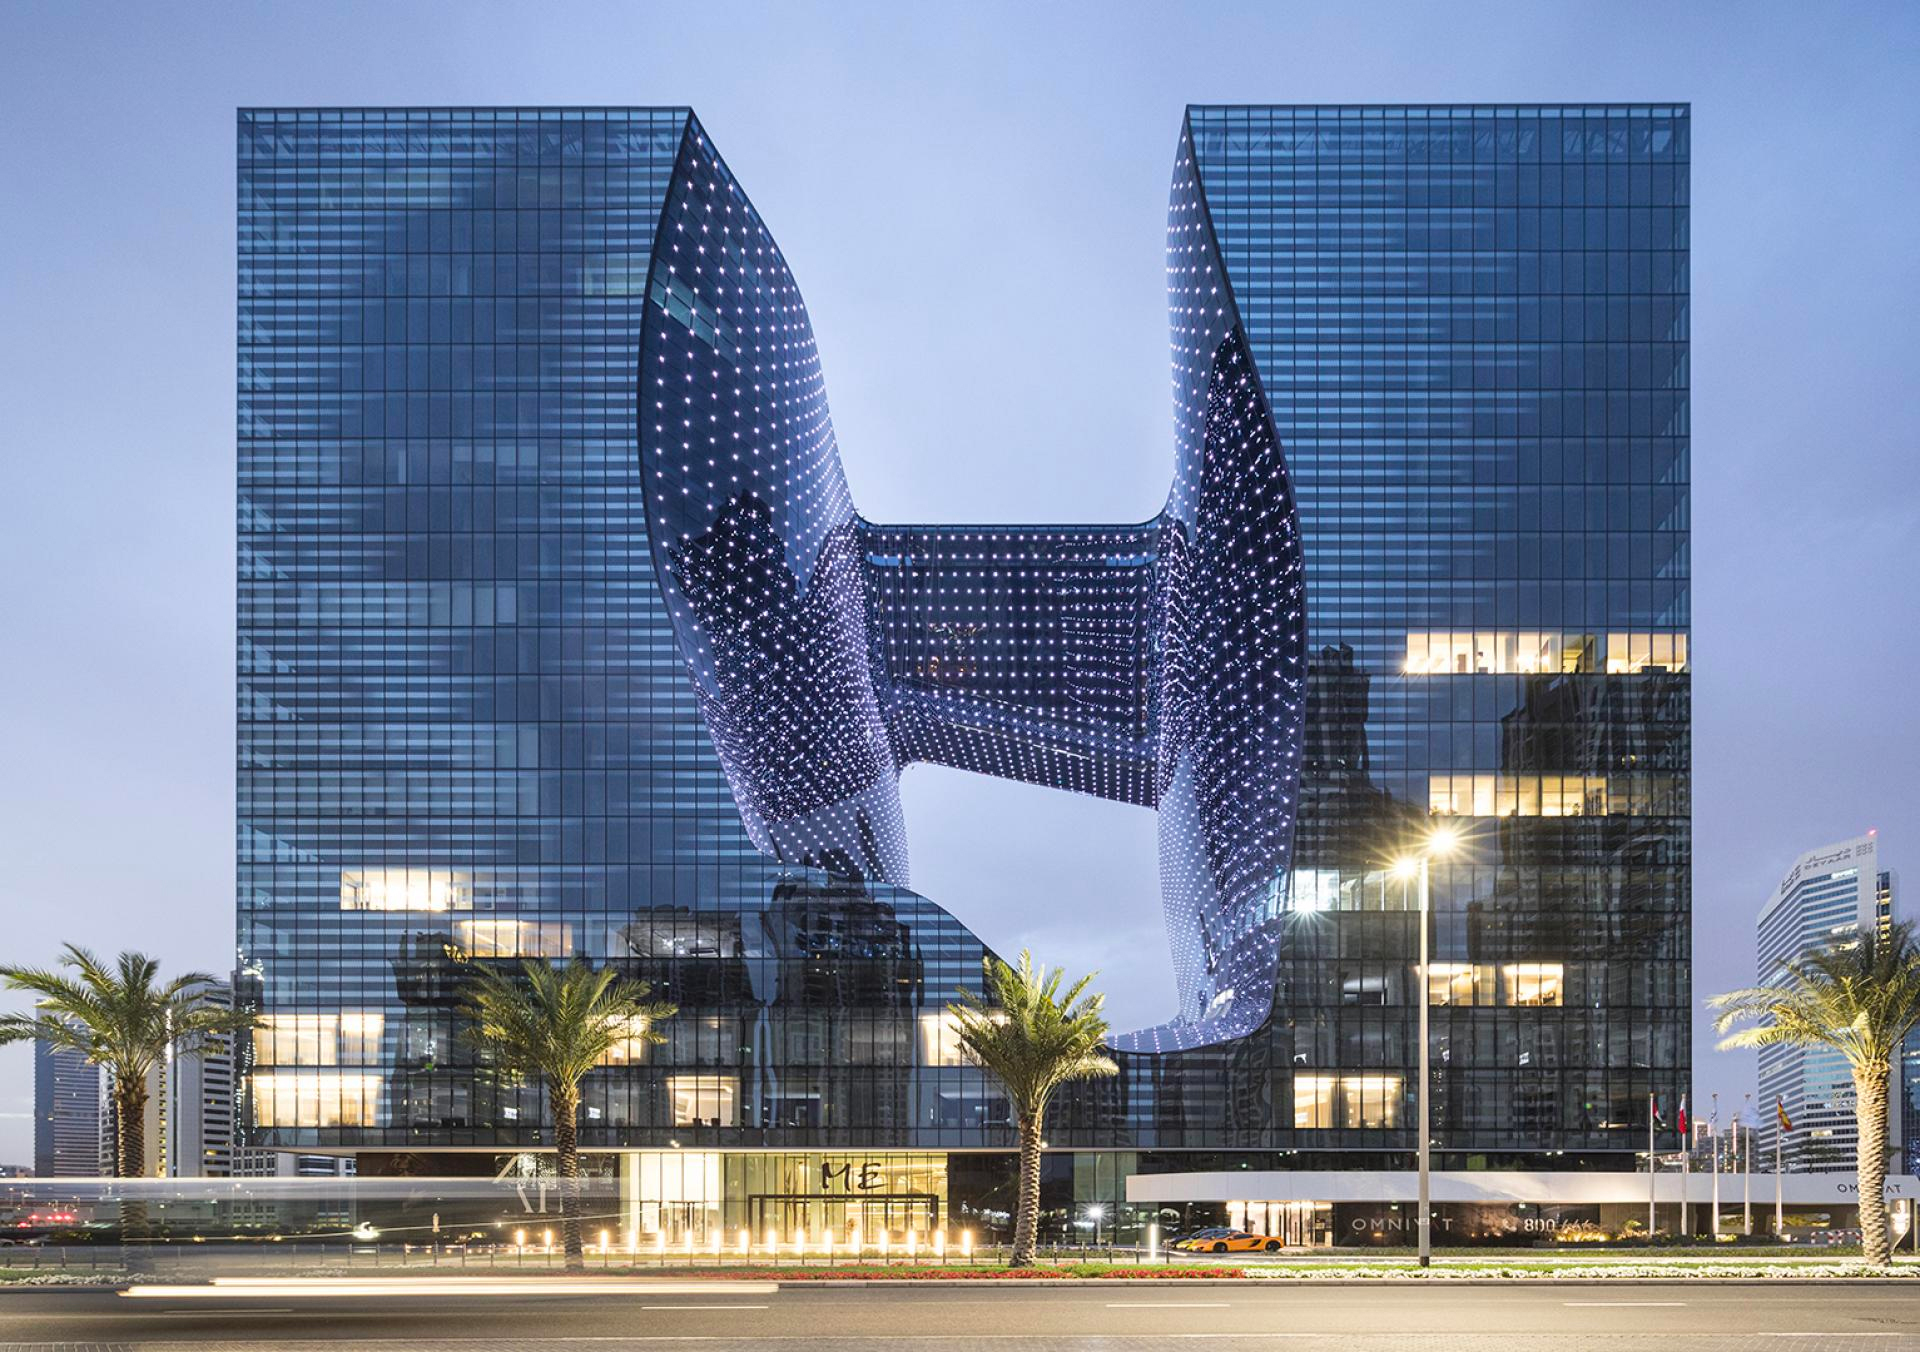 OPUS is Dubai's Magnus Opus in Hotel Architecture